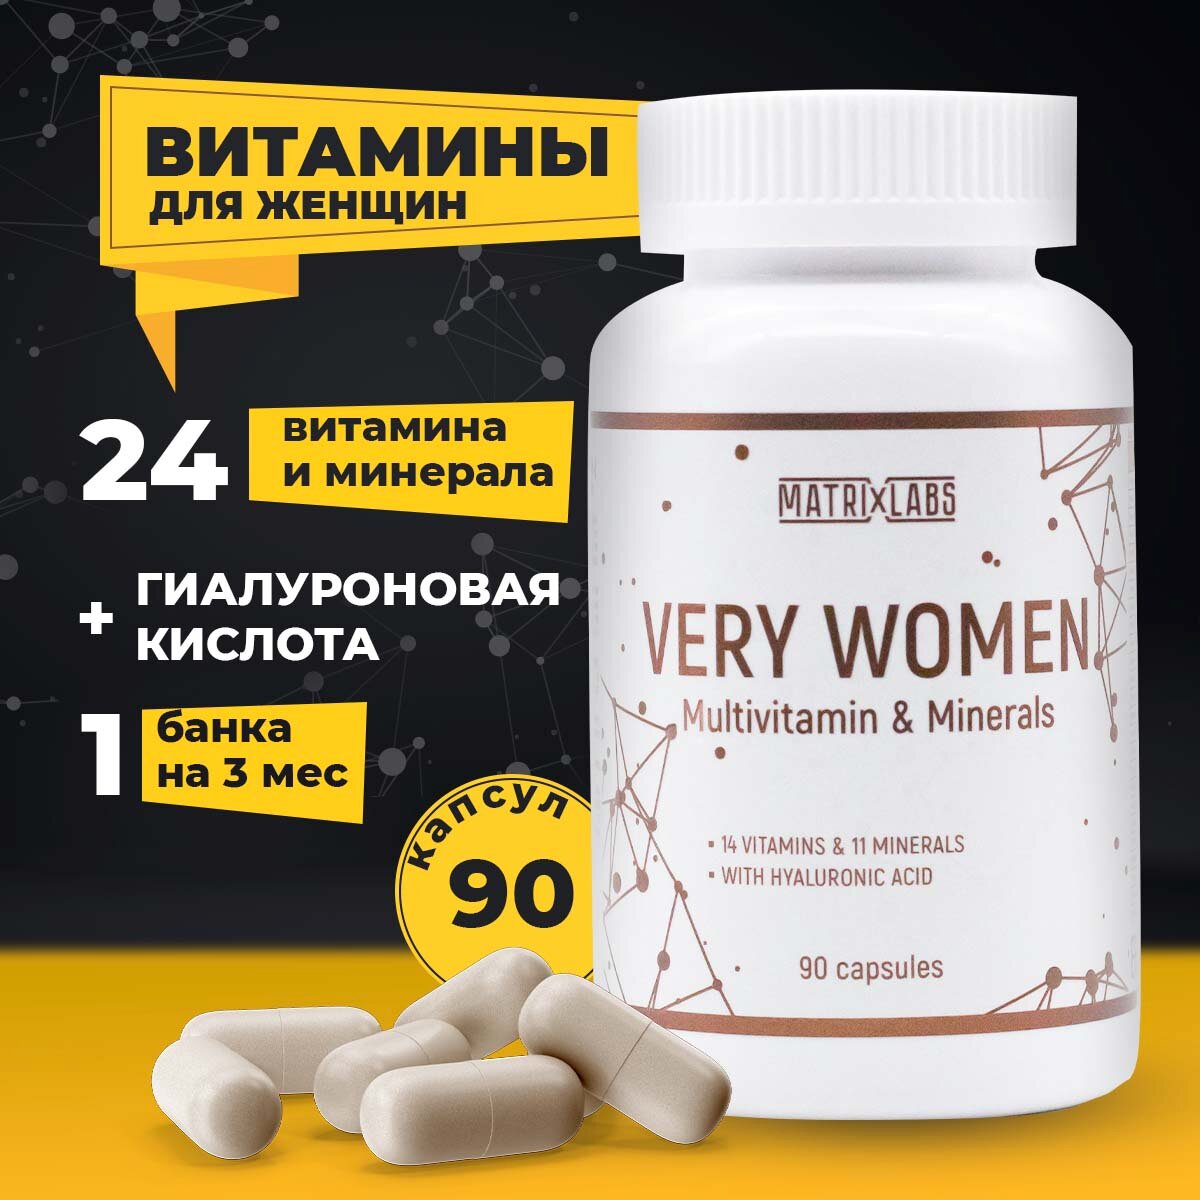 Витамины для женщин VERY WOMEN 90 капсул Matrix Labs, для волос кожи и ногтей, спортивные витамины